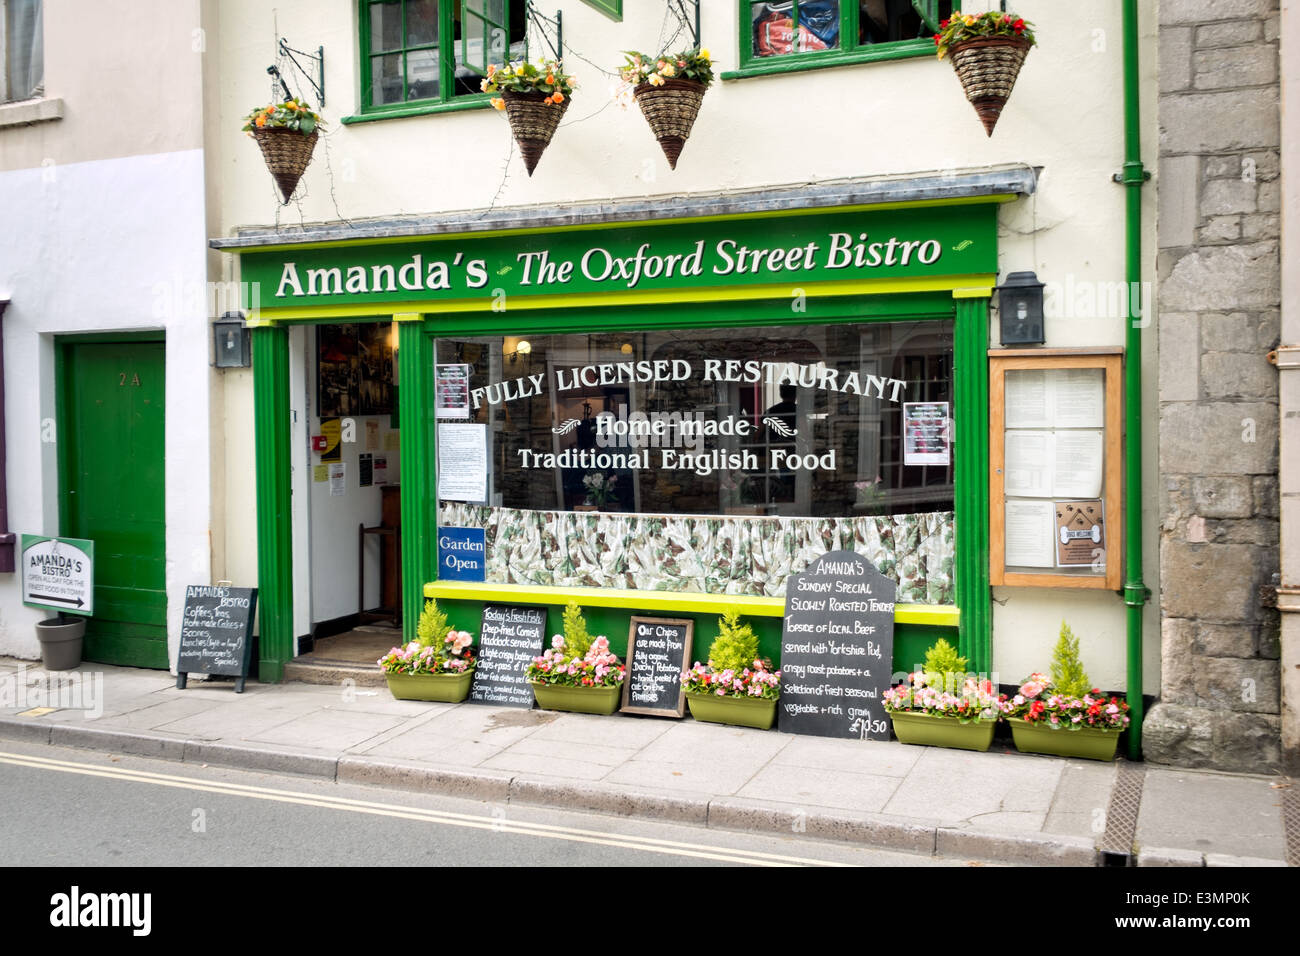 Amanda's Bistro dans Oxford Street, Malmesbury, Wiltshire, lors d'une journée ensoleillée Banque D'Images